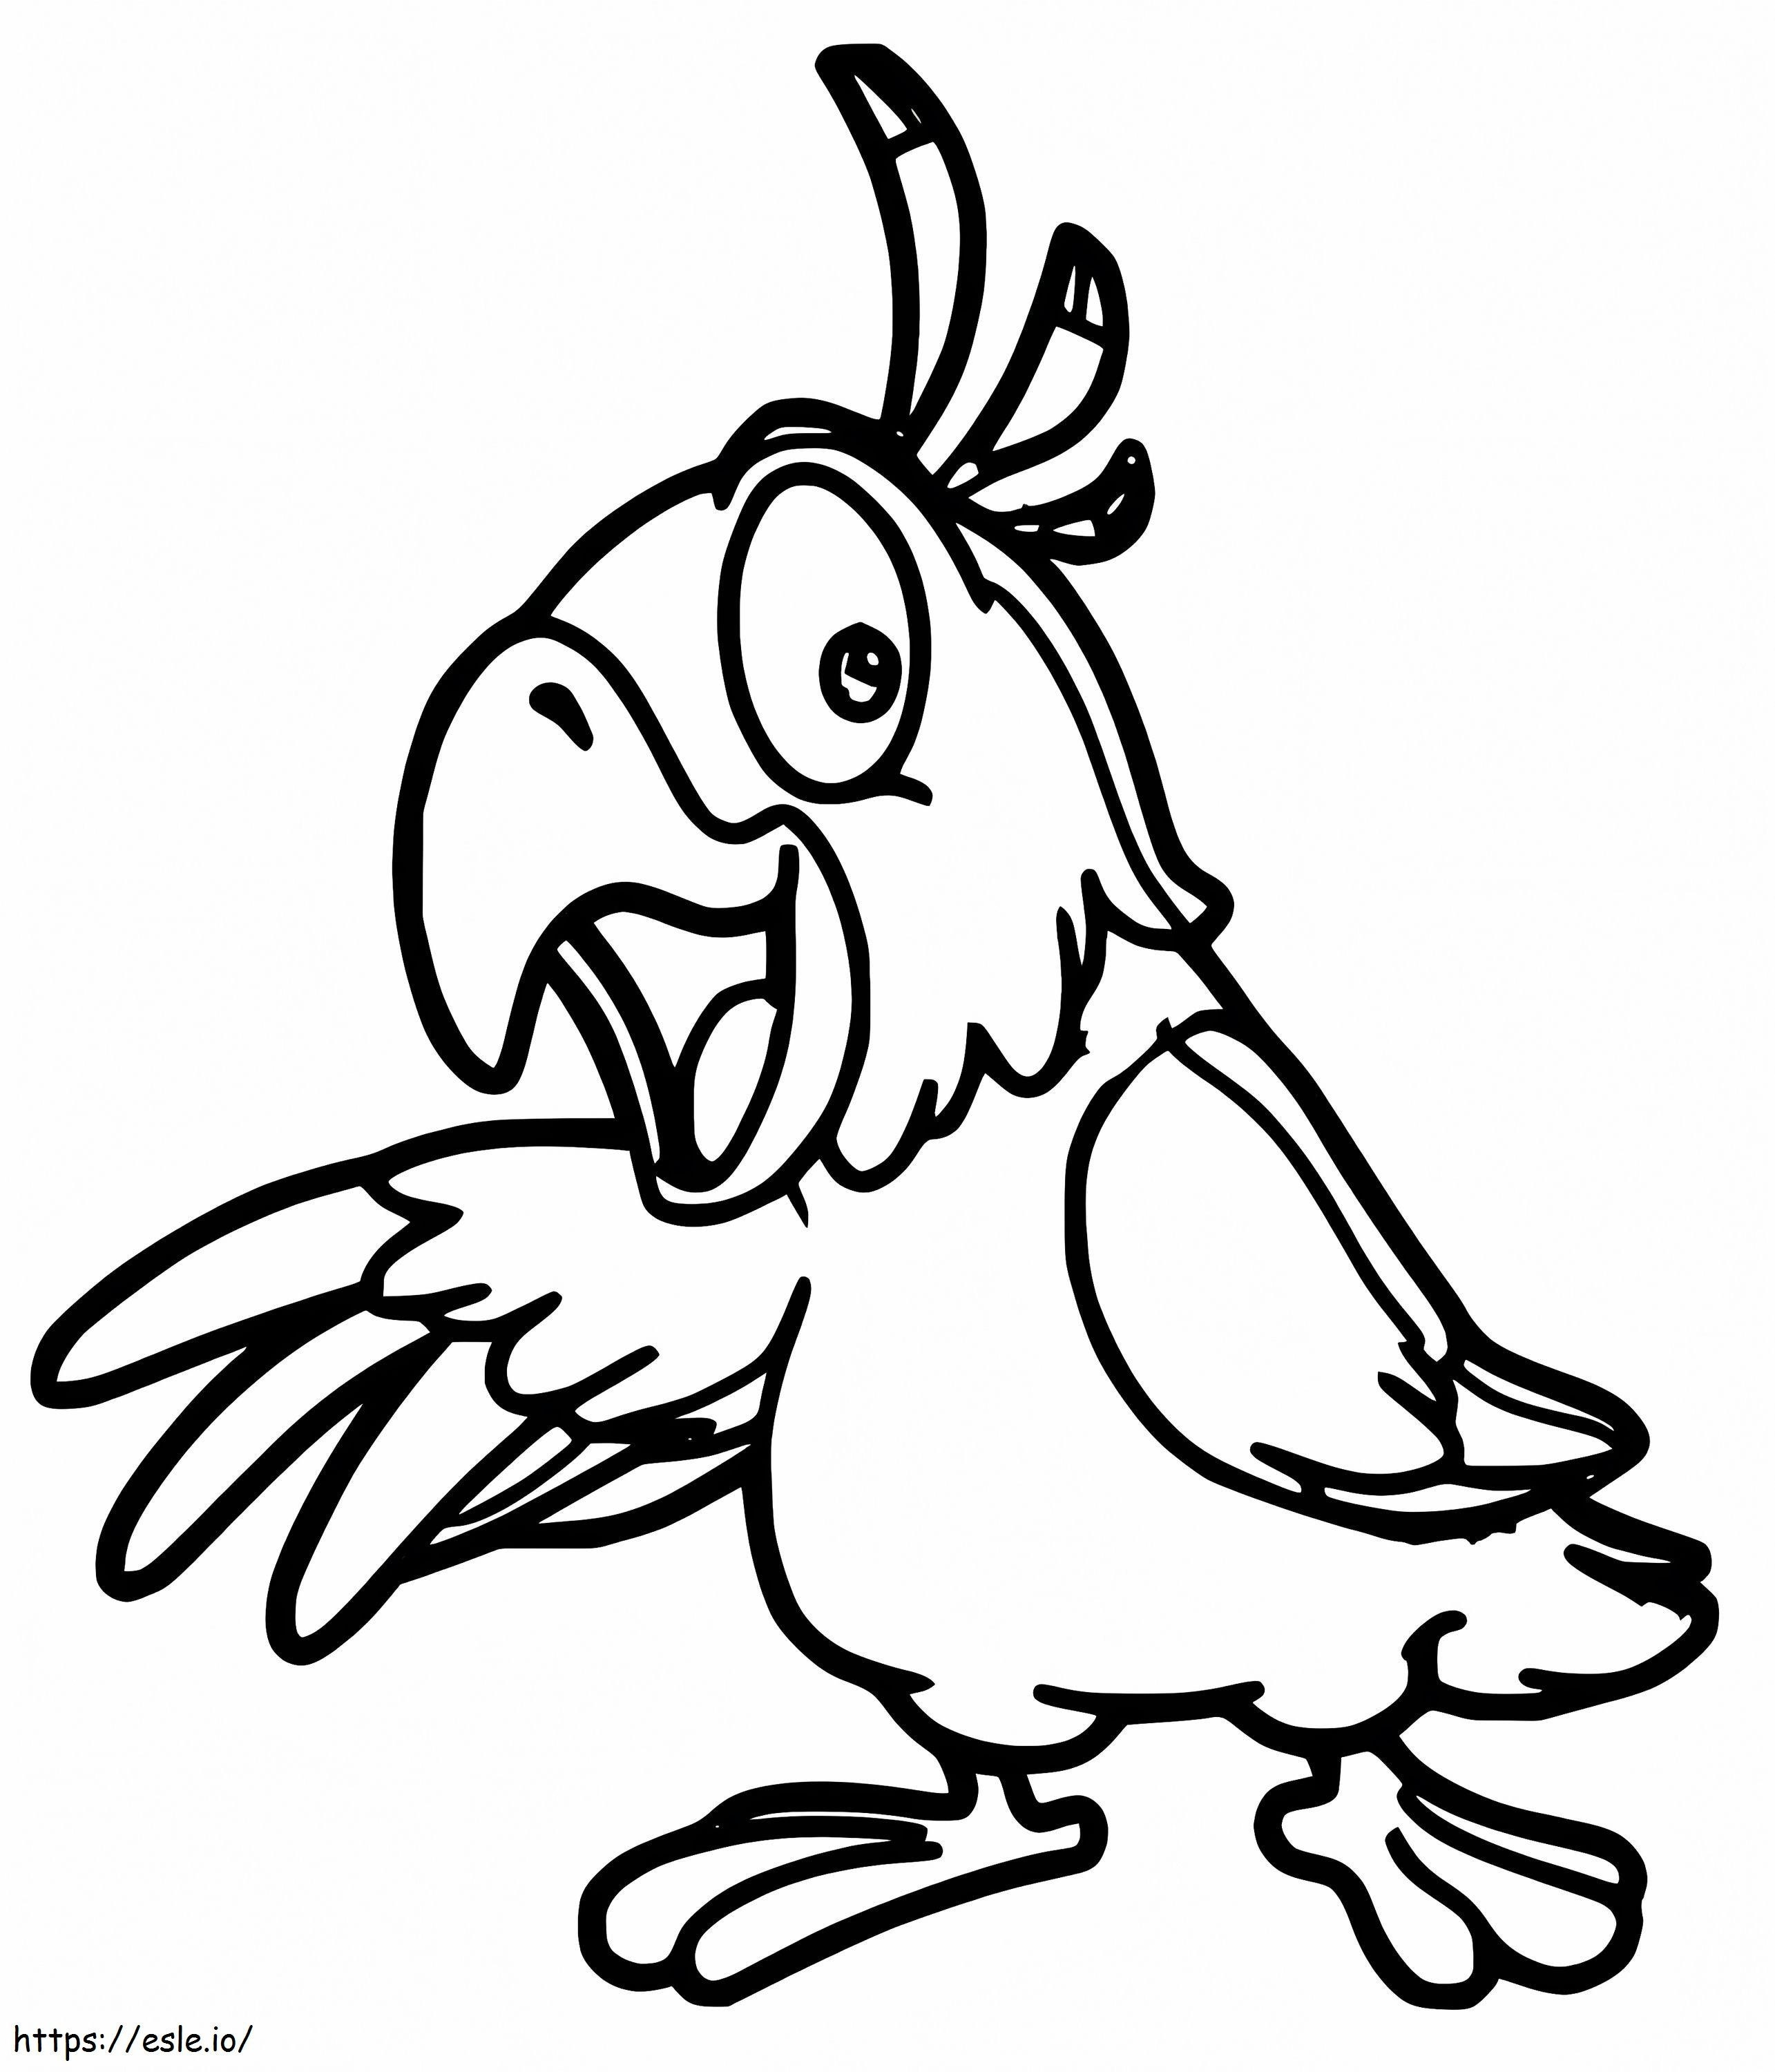 Komik karikatür Sultan papağanı boyama